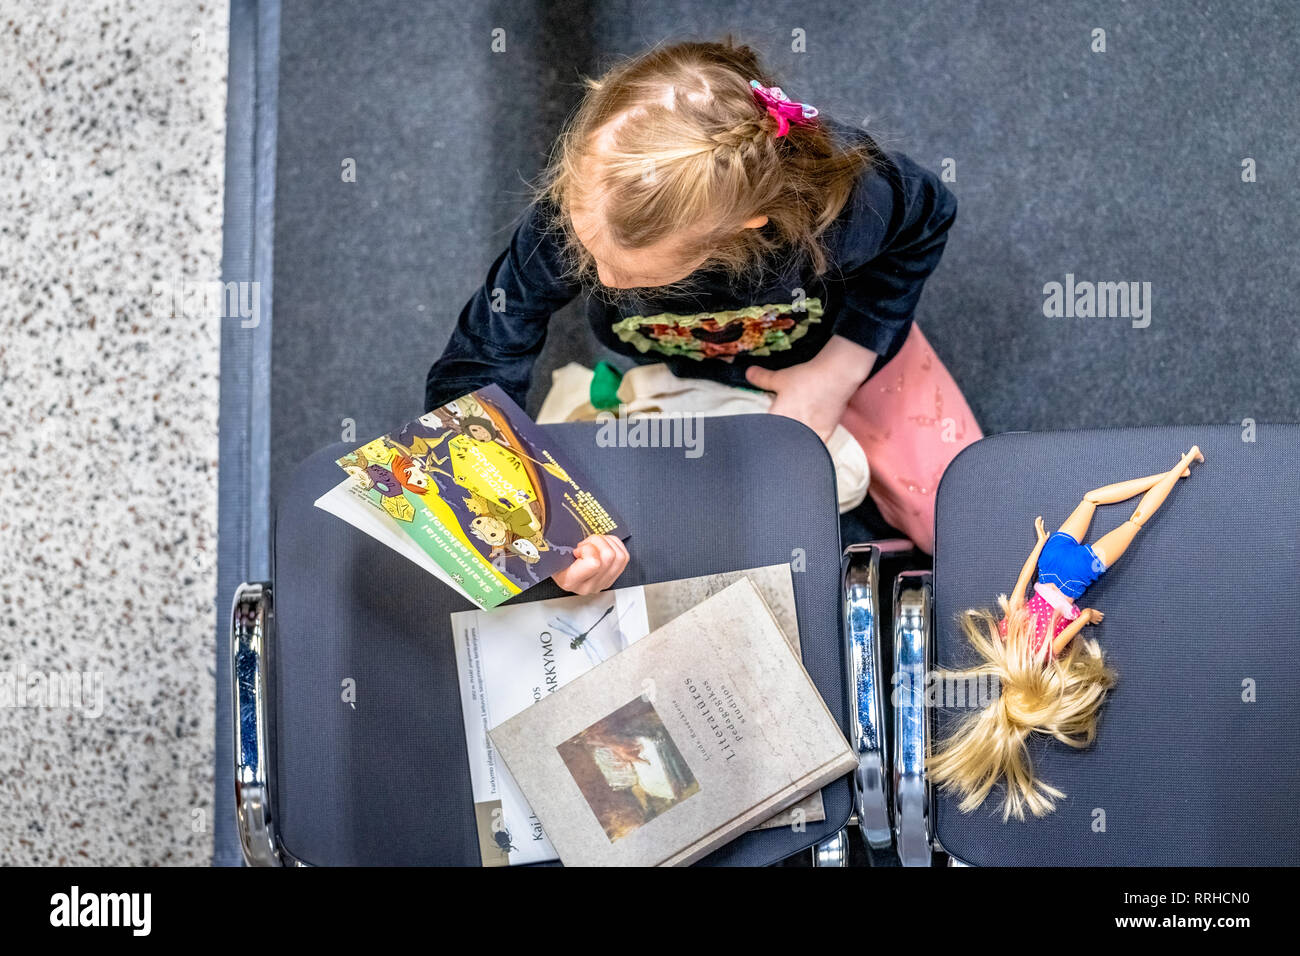 Le livre de Vilnius. Petite fille est en train de lire un livre sur big data. À côté d'elle se trouve sa poupée sur une chaise Banque D'Images